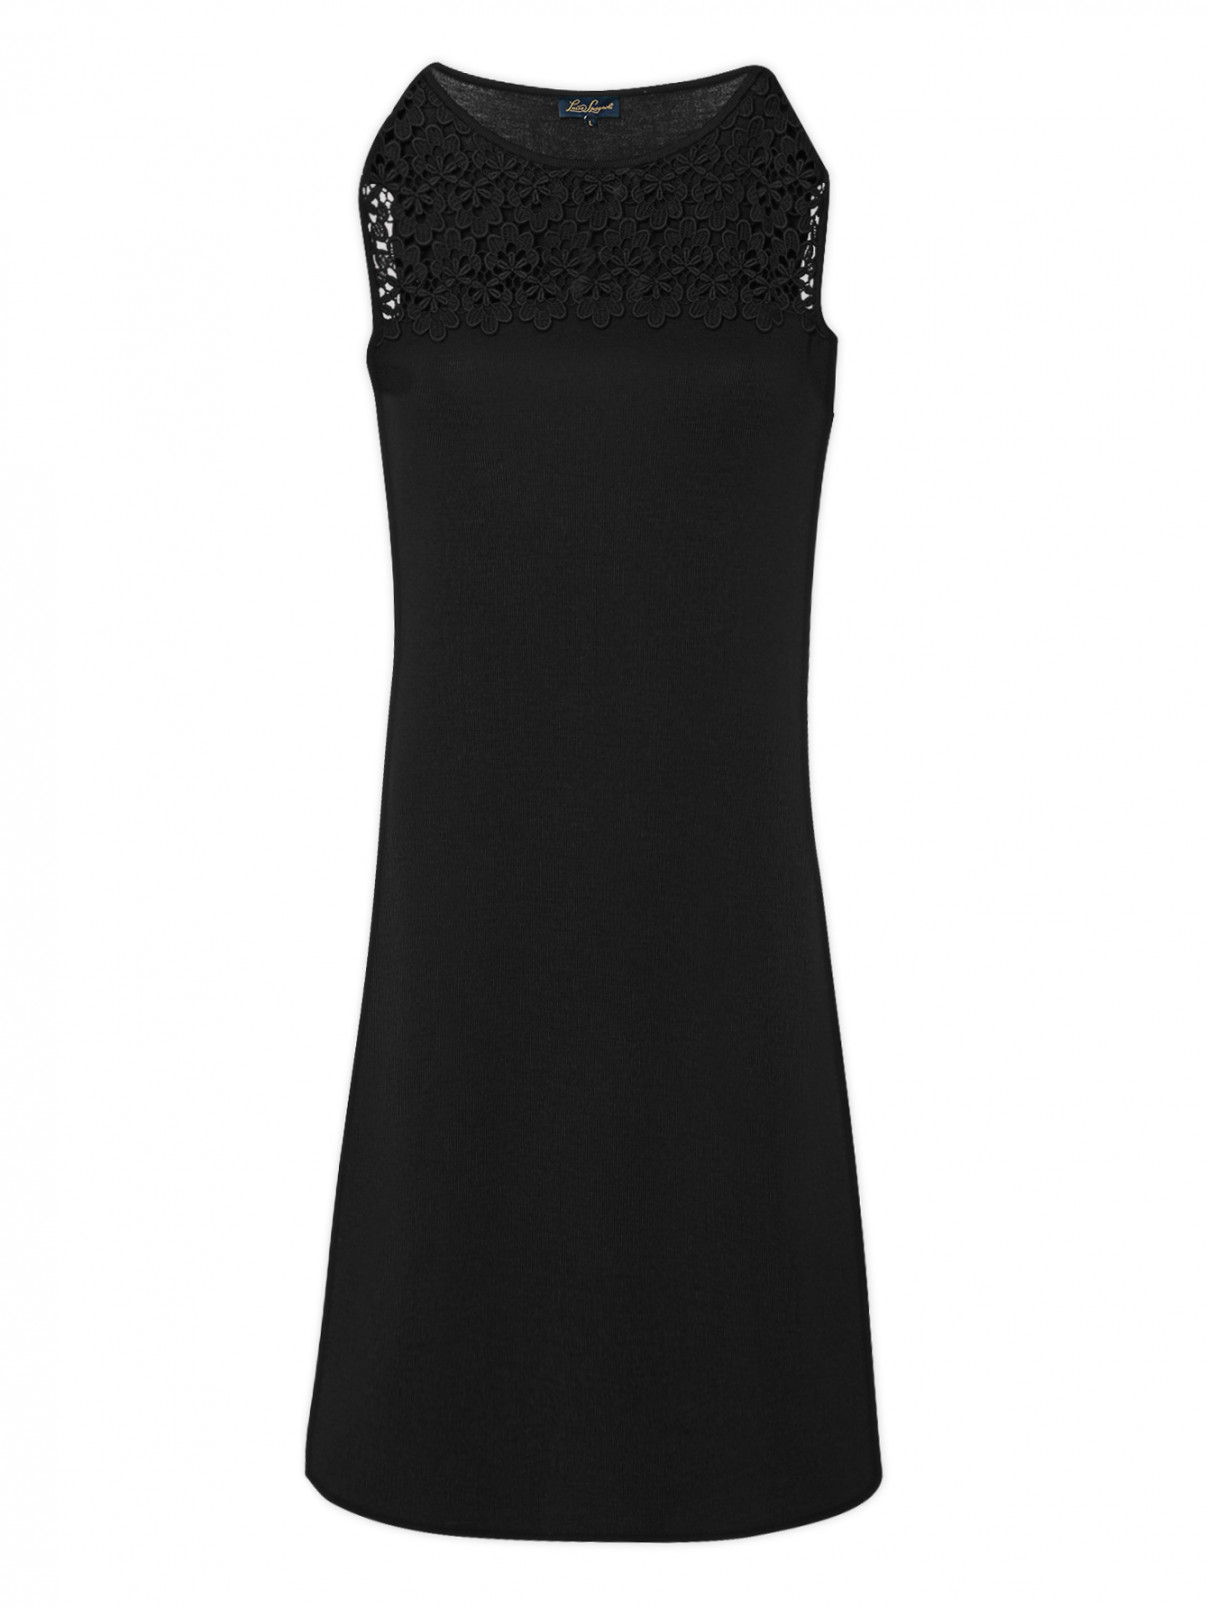 Платье из шерсти с кружевной аппликацией Luisa Spagnoli  –  Общий вид  – Цвет:  Черный